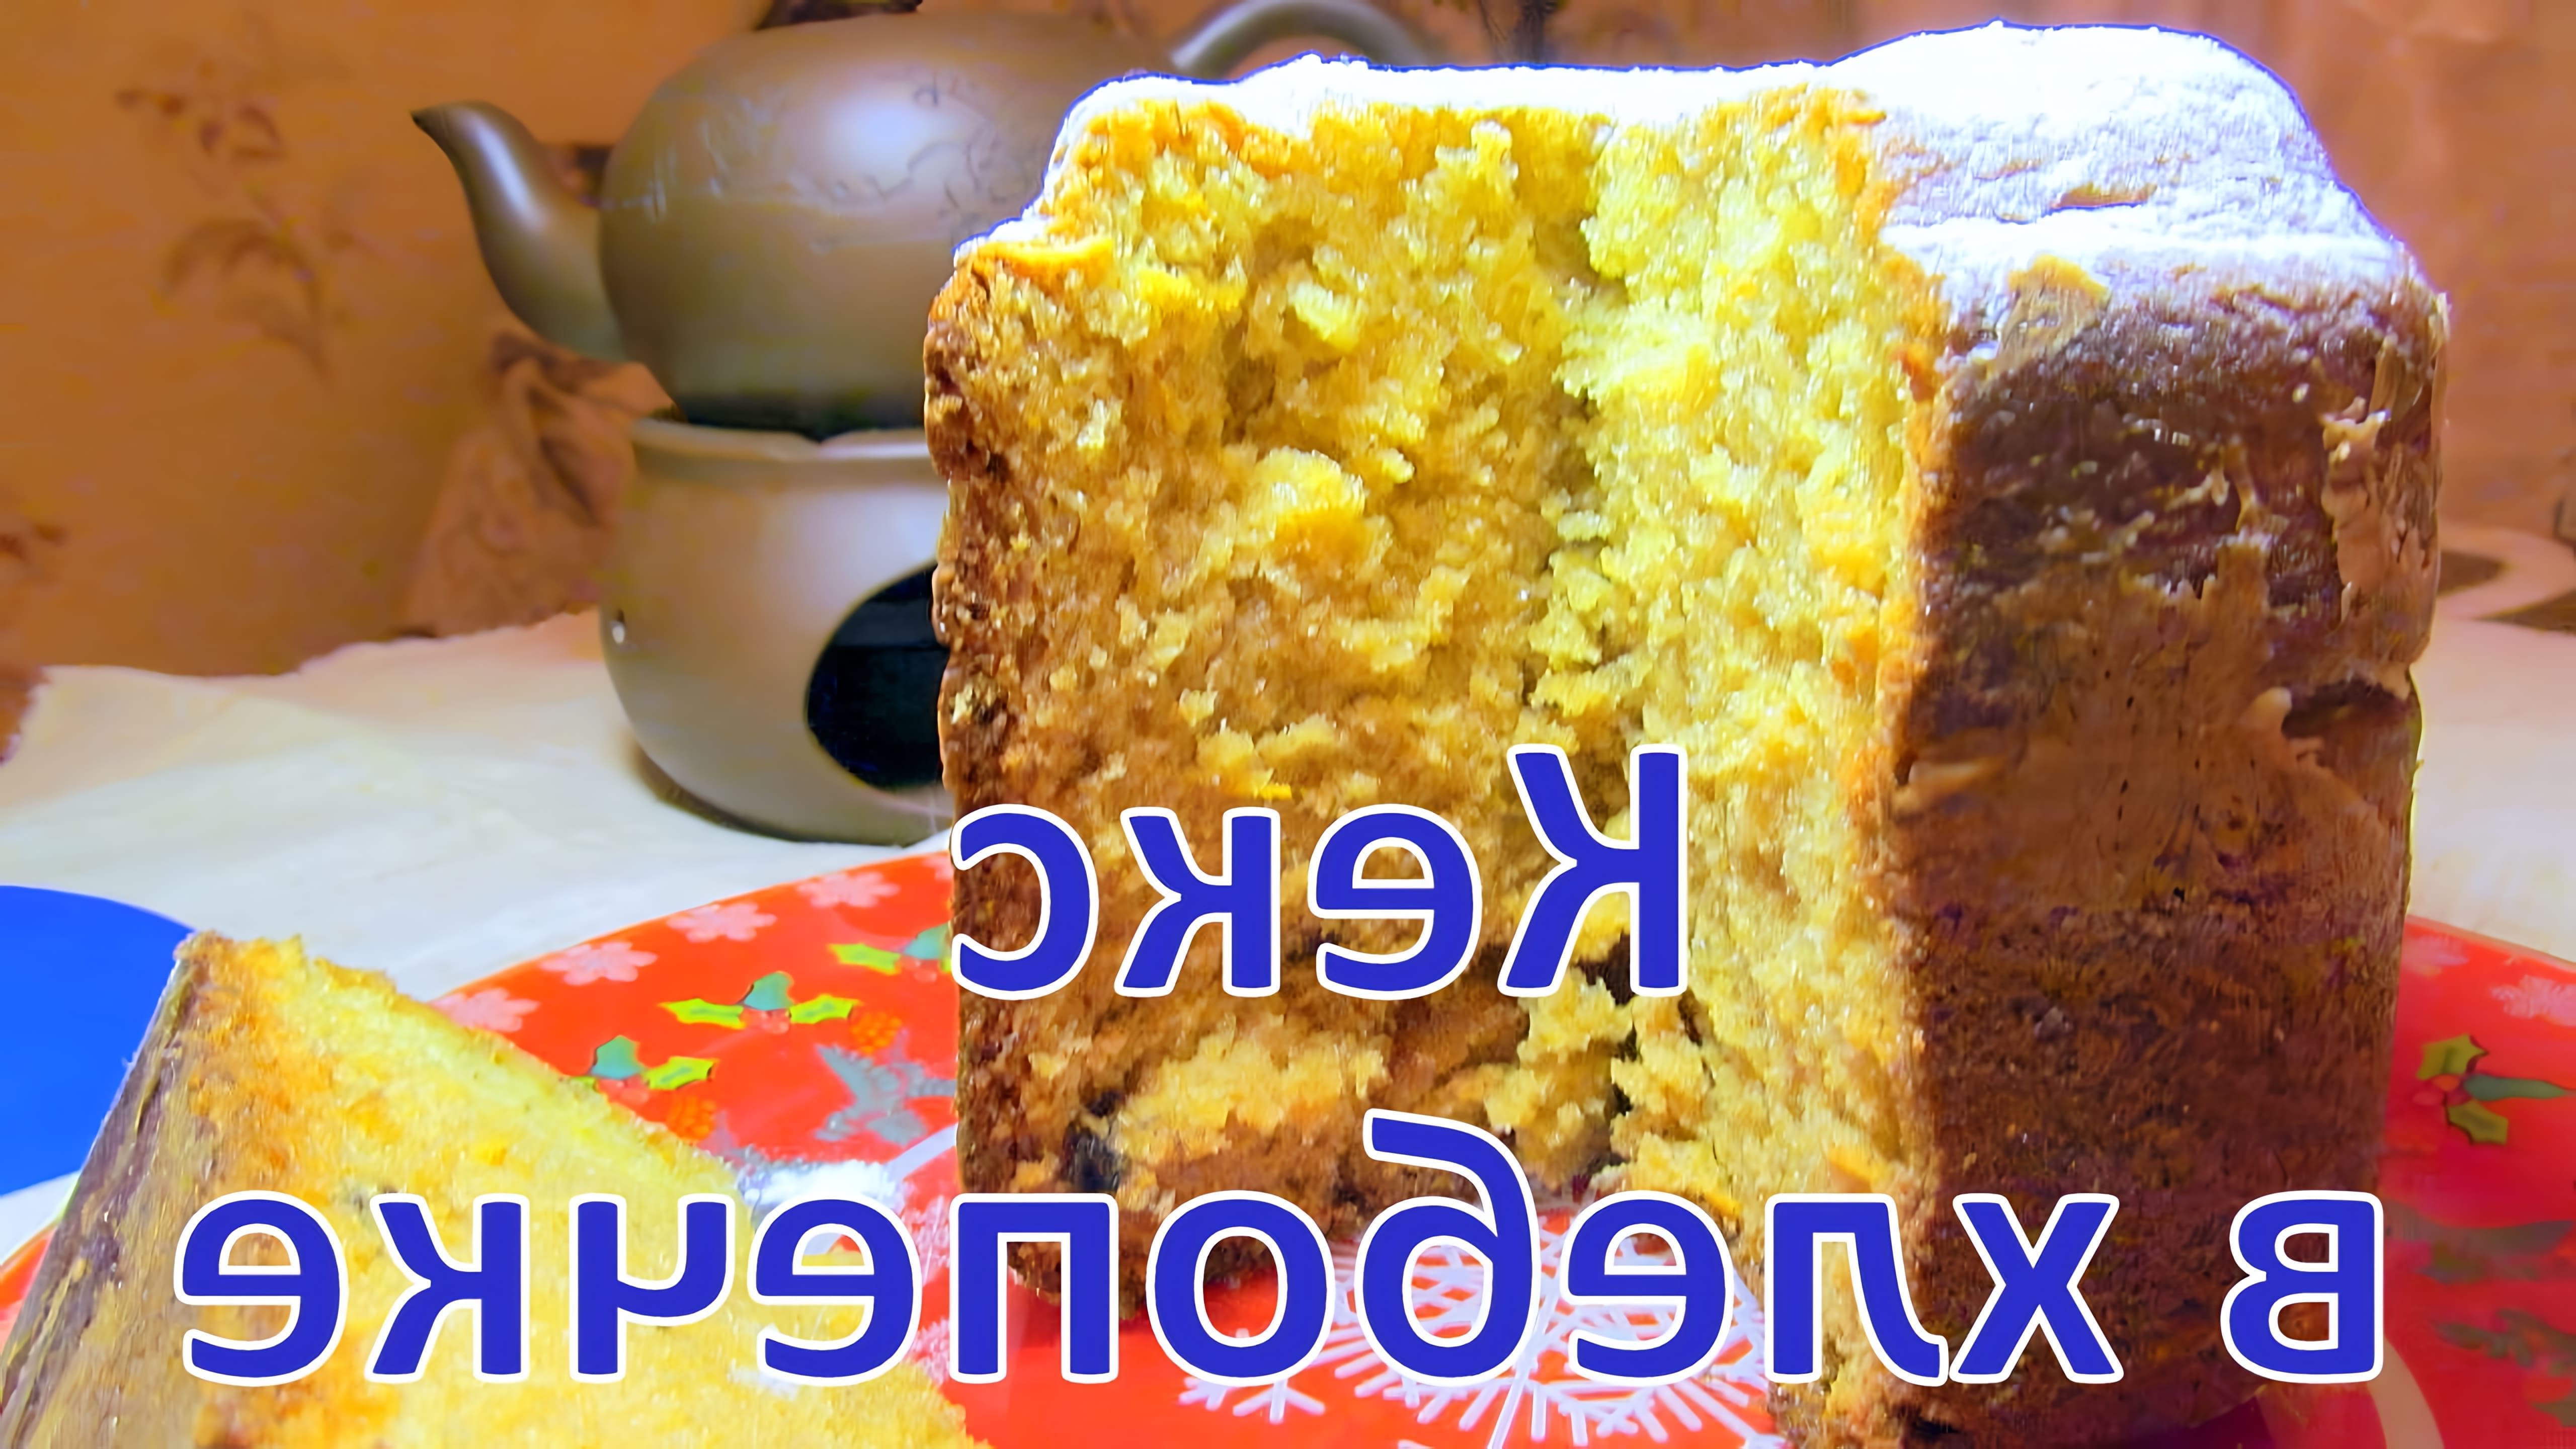 В этом видео-ролике демонстрируется процесс приготовления творожного кекса в хлебопечке